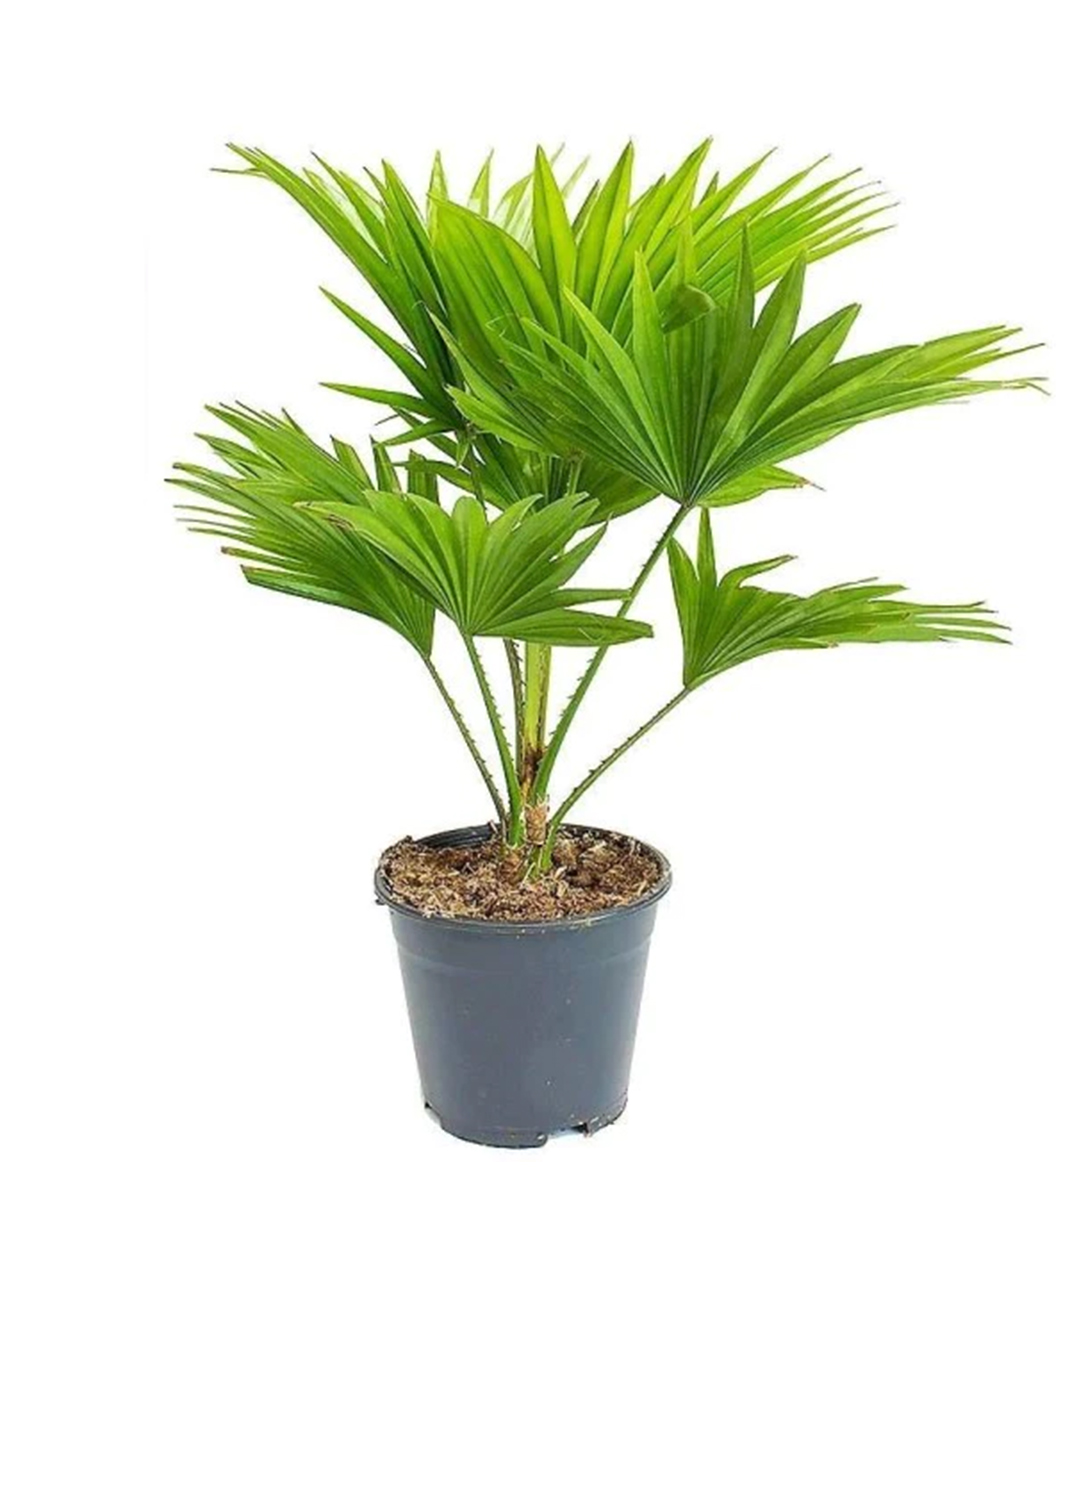 Chinese Fan Palm, Livistona Chinensis, Fountain Palm 1m